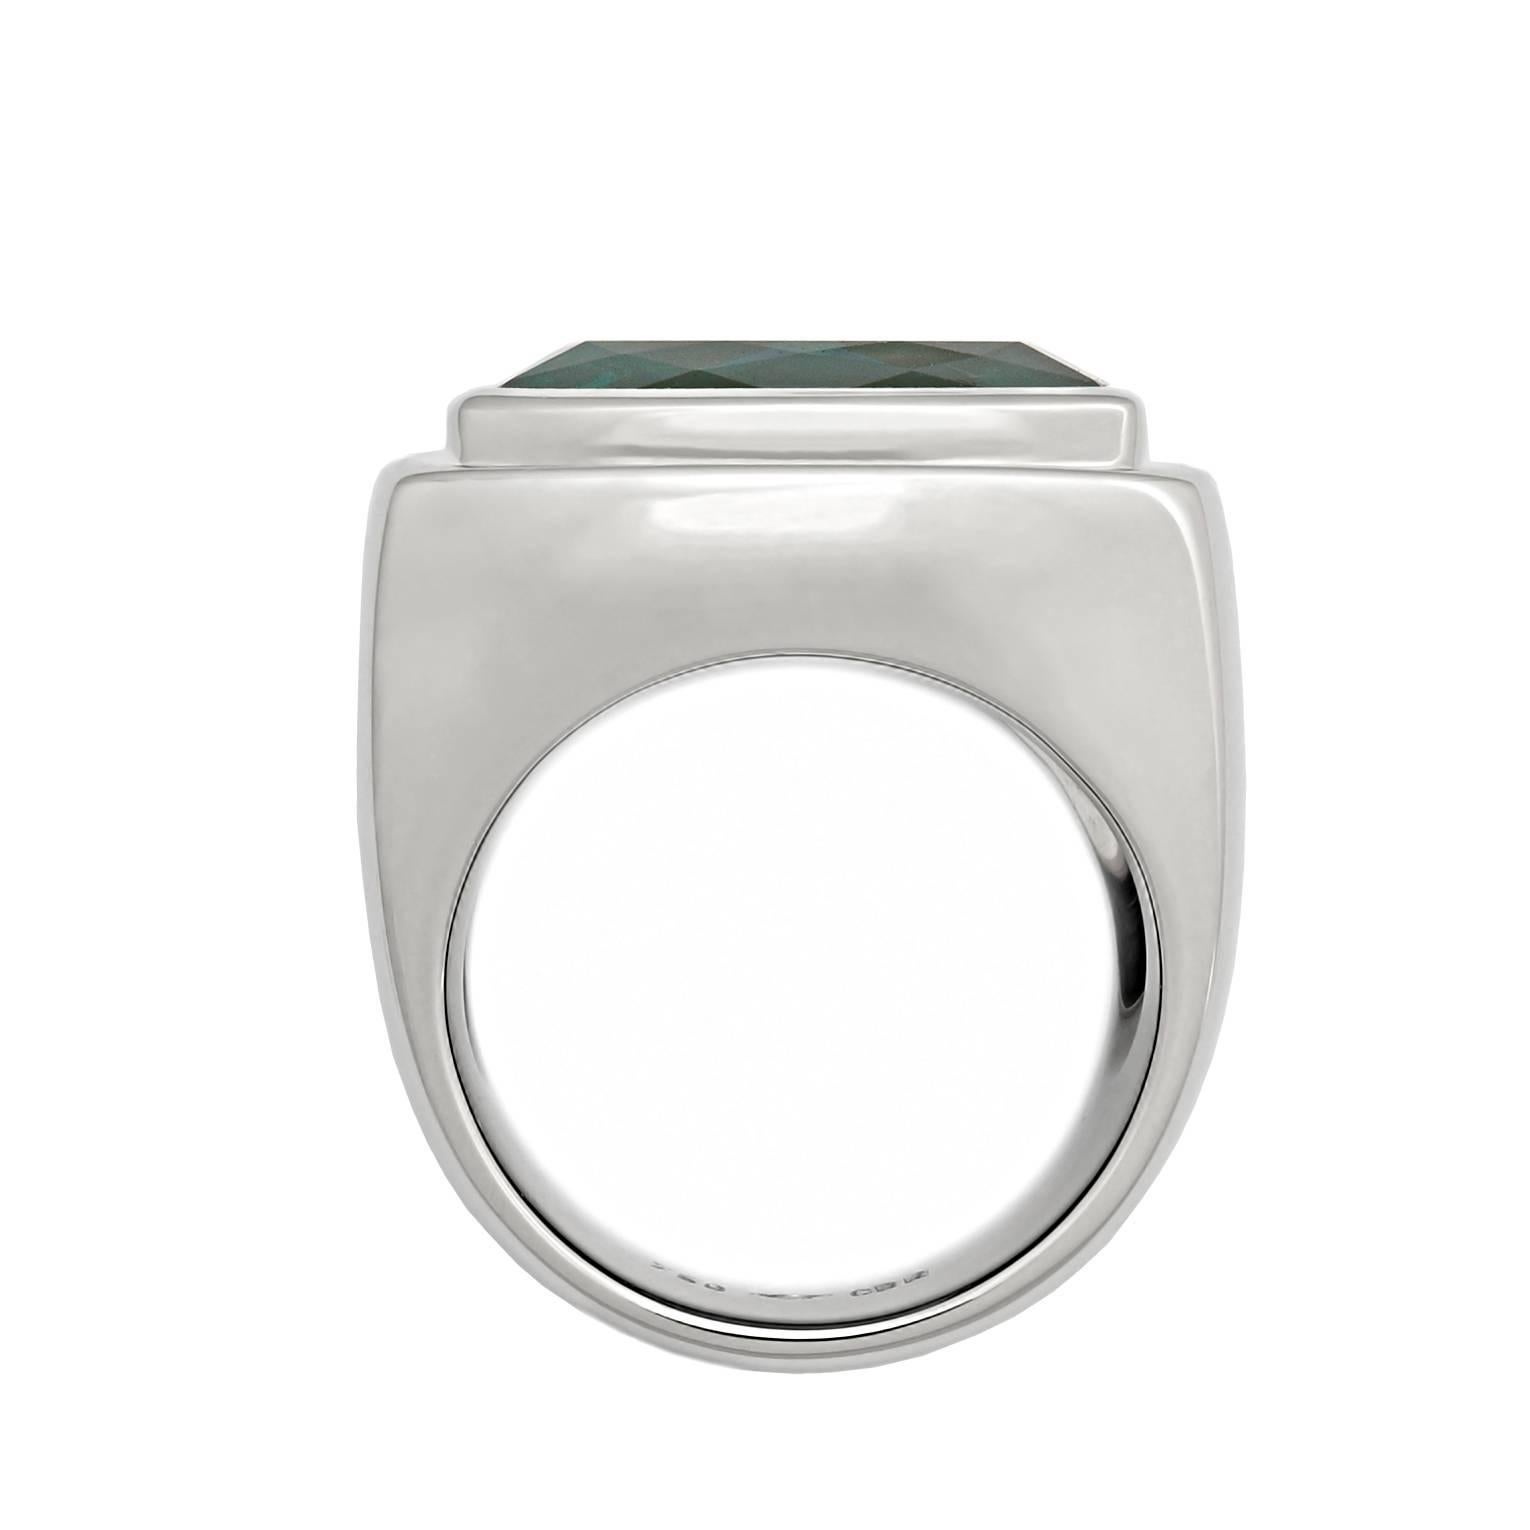 Ein klassischer rechteckiger Ring mit einem unglaublichen Indigolith von 14,45 ct in 18k Weißgold. Die bläulich-grüne Farbe ist außergewöhnlich selten. Ein eleganter und moderner Ring, entworfen von Colleen B. Rosenblat.